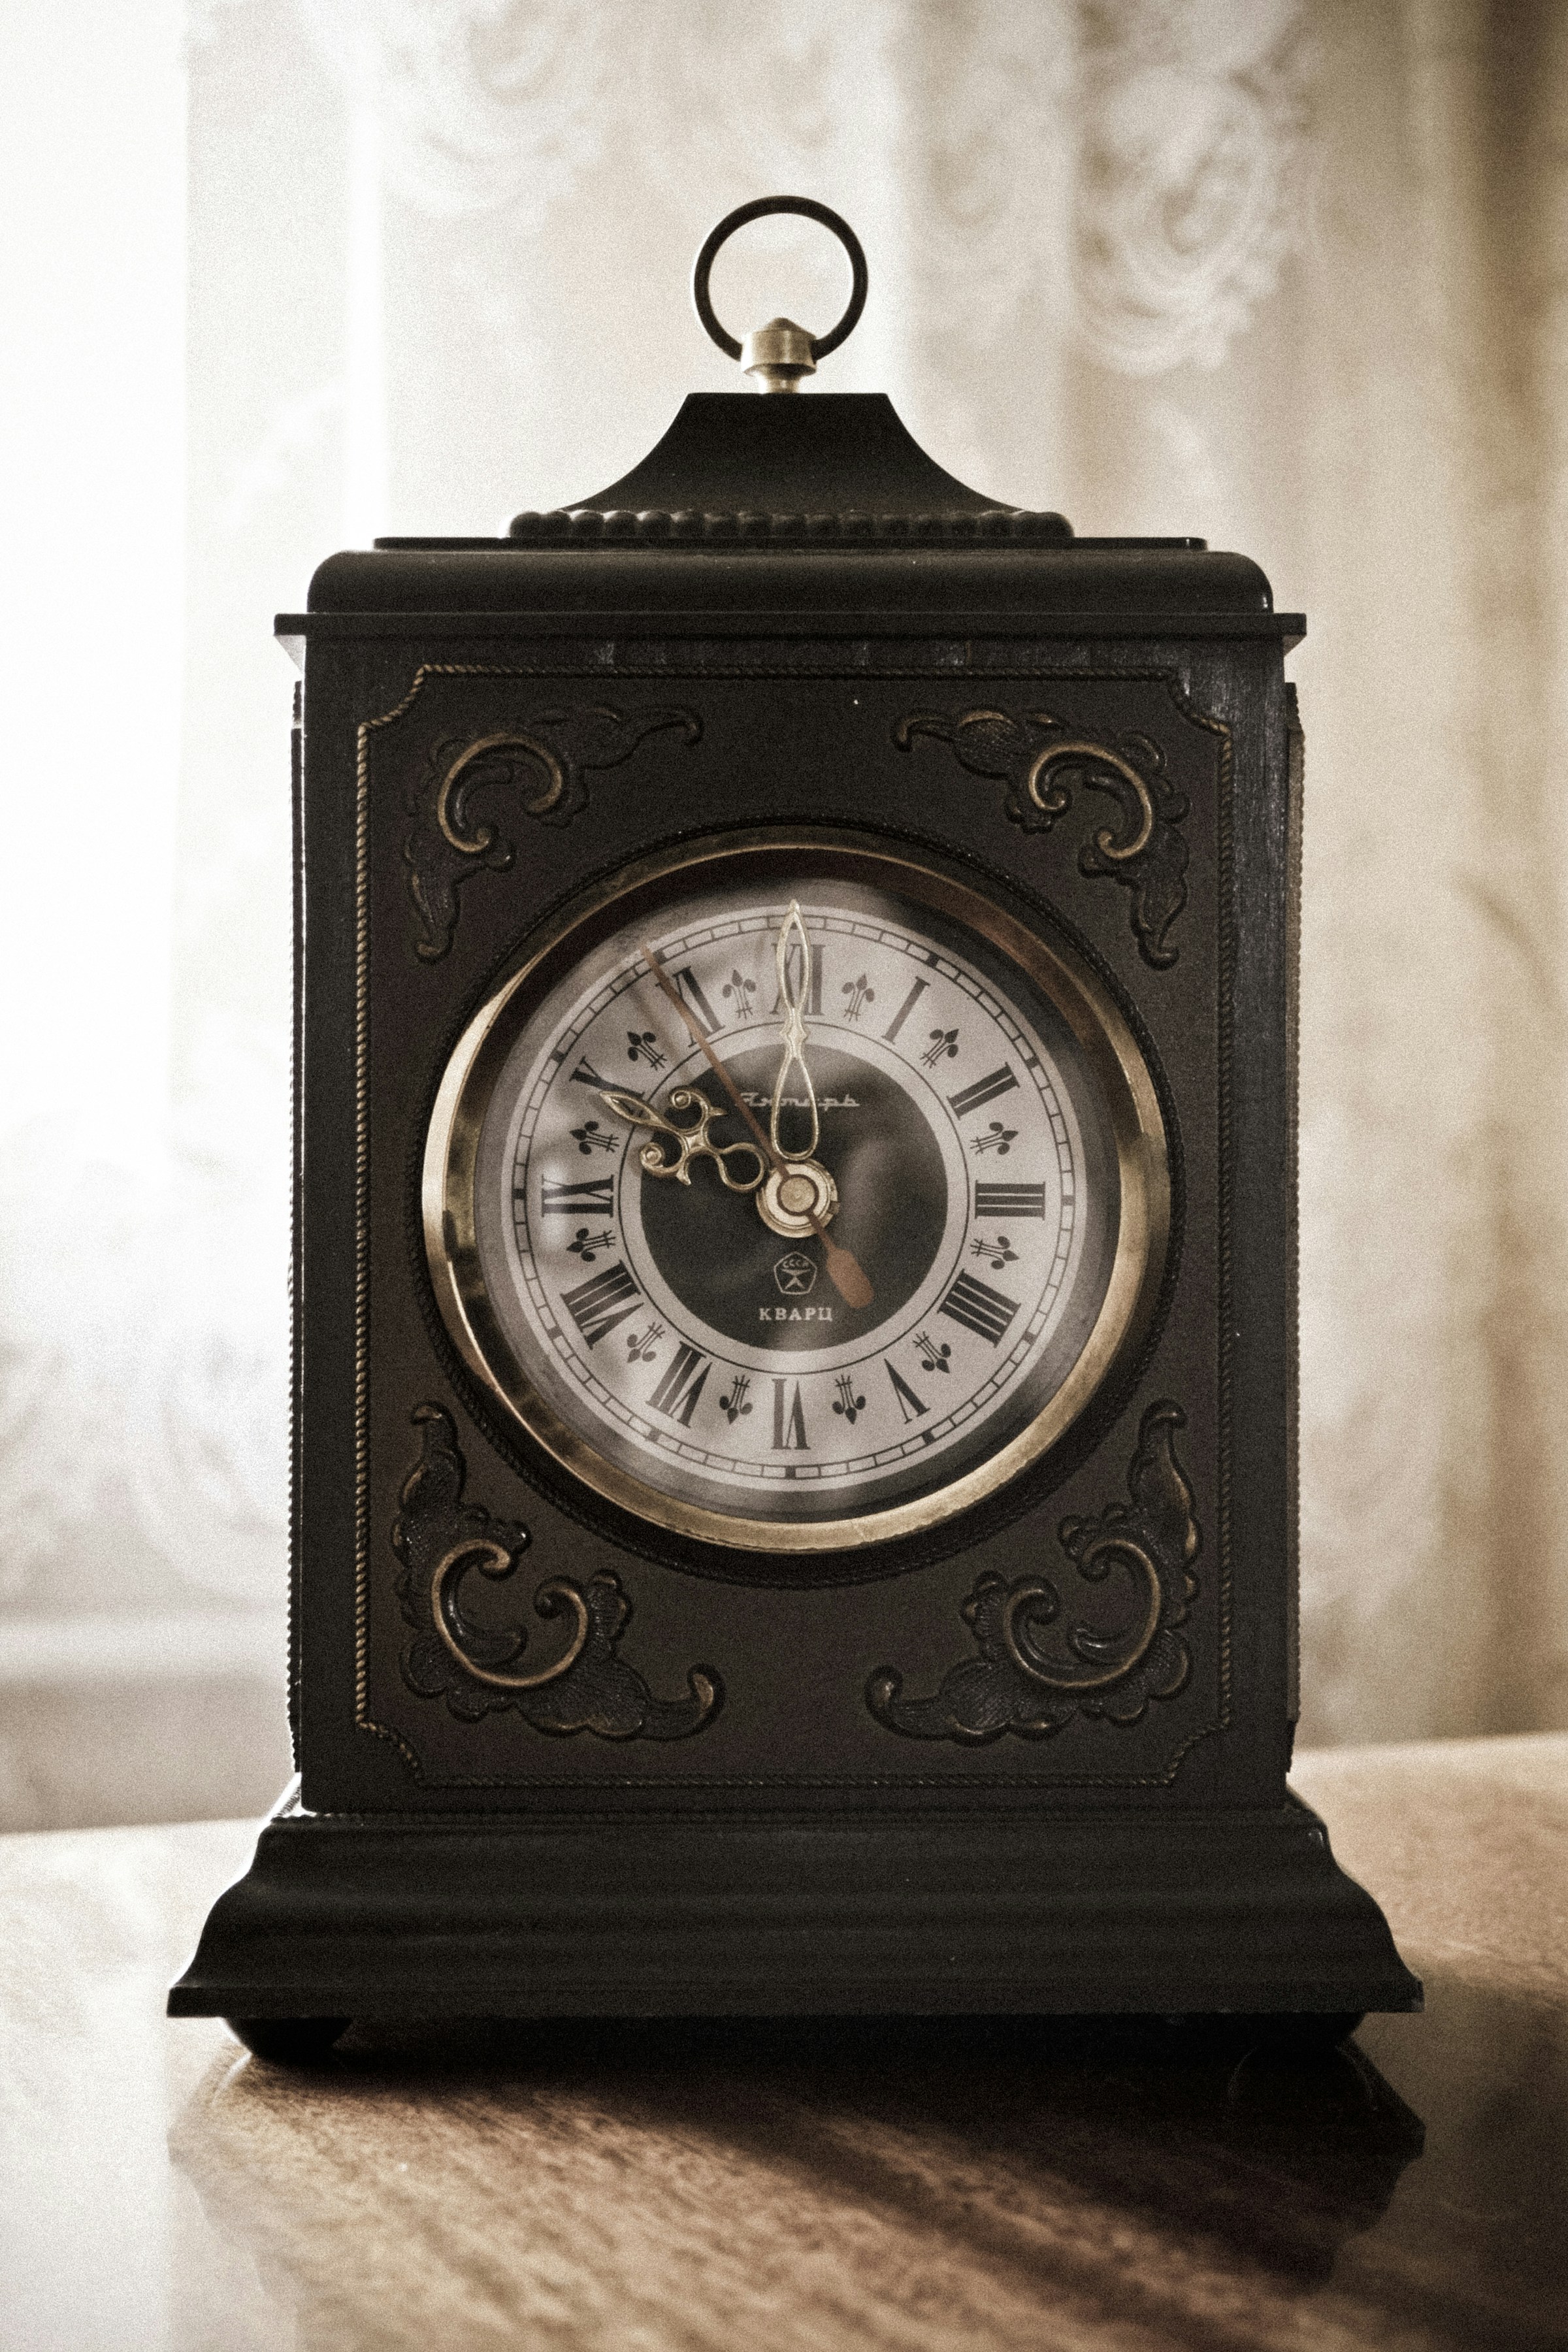 Horloge posée sur une surface | Source : Unsplash